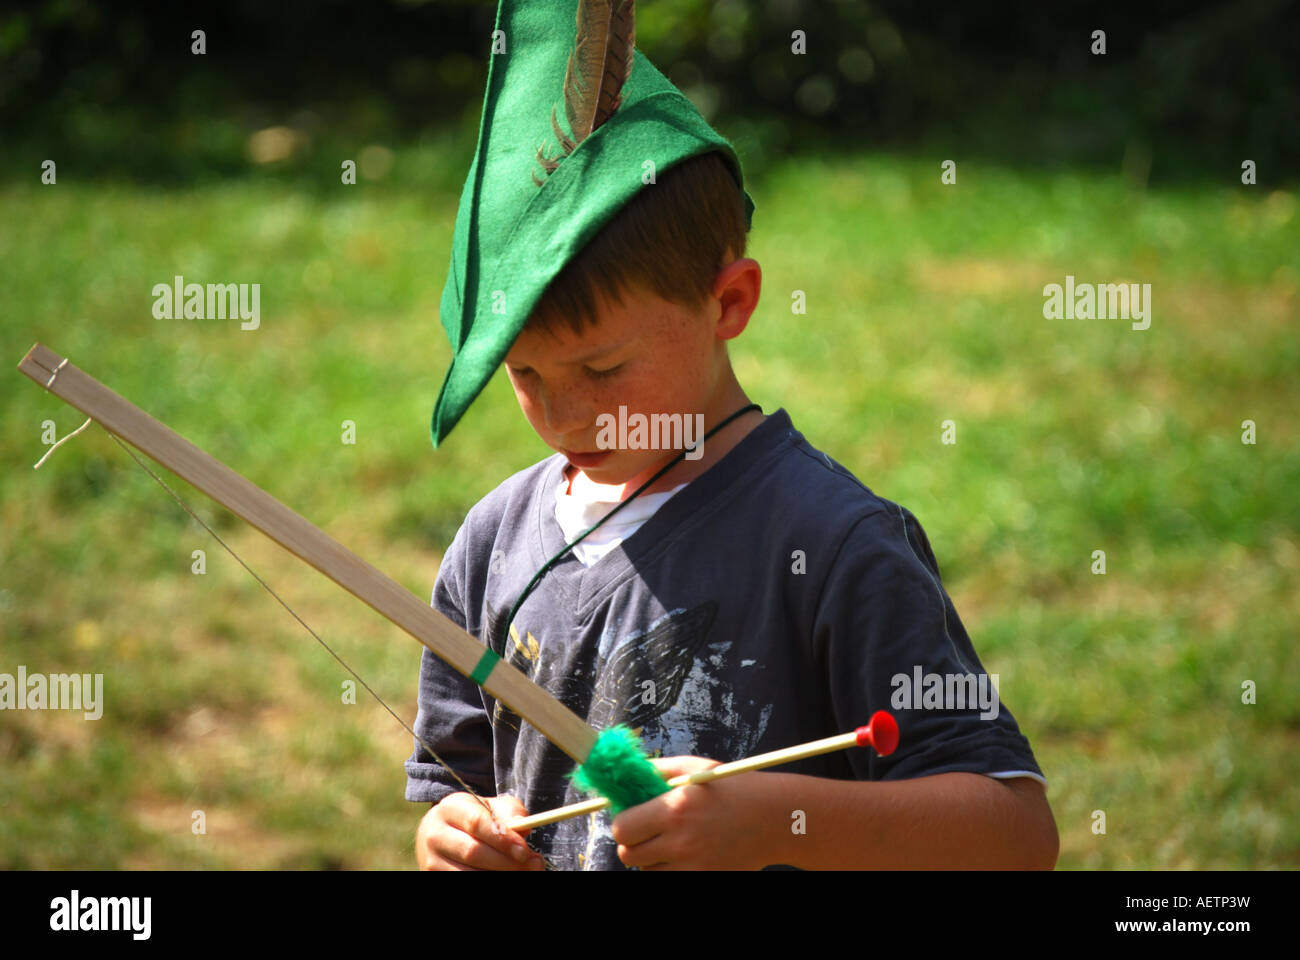 Ragazzo con cappello verde e di arco e frecce, Robin Hood Festival, la Foresta di Sherwood, Nottinghamshire, England, Regno Unito Foto Stock